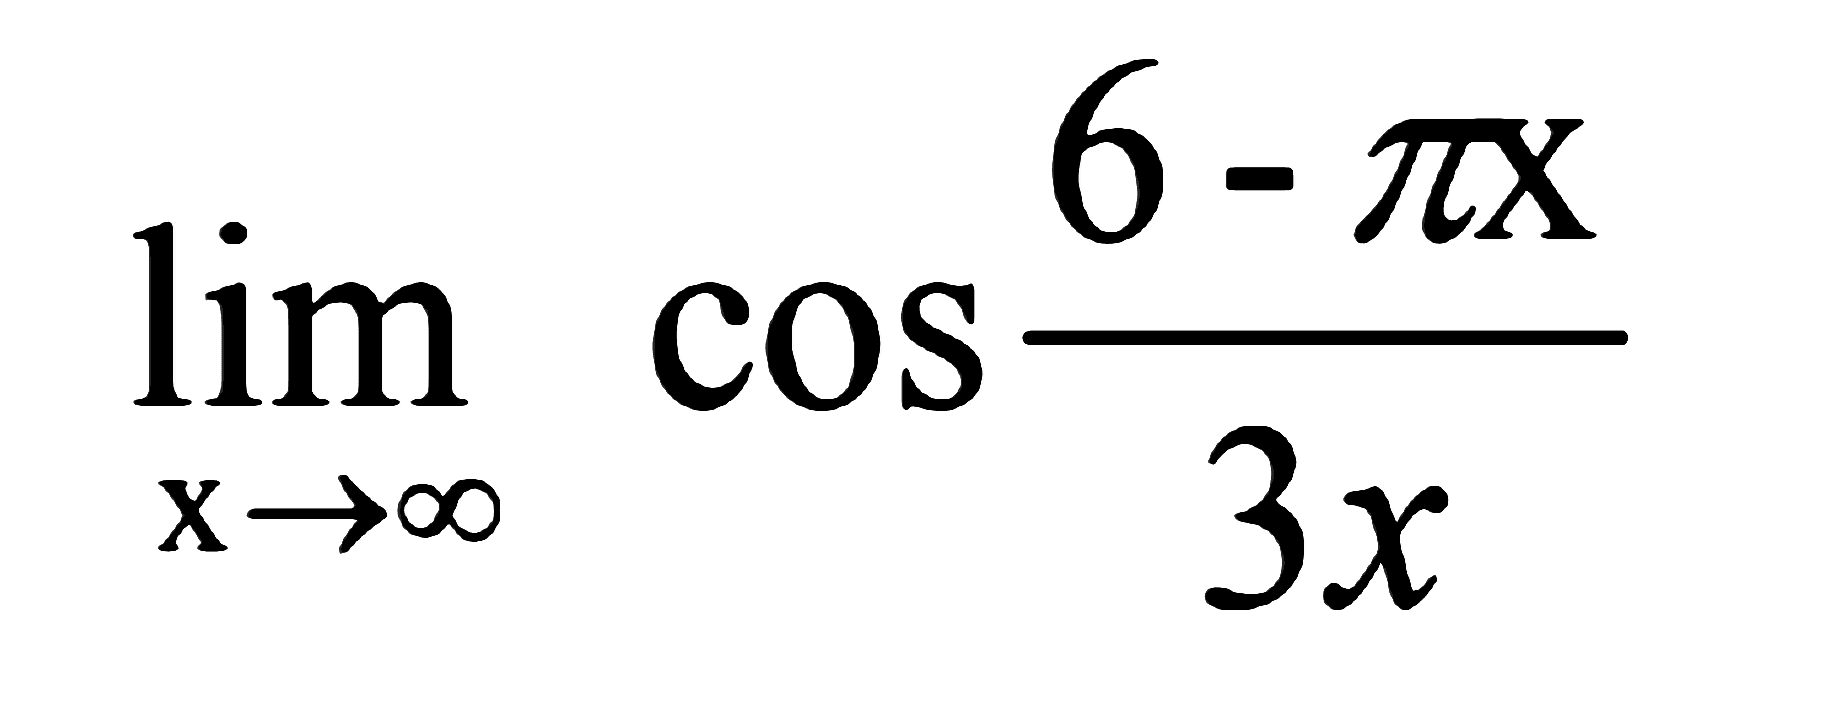 limit x mendekati tak hingga cos(6-pi x)/3x